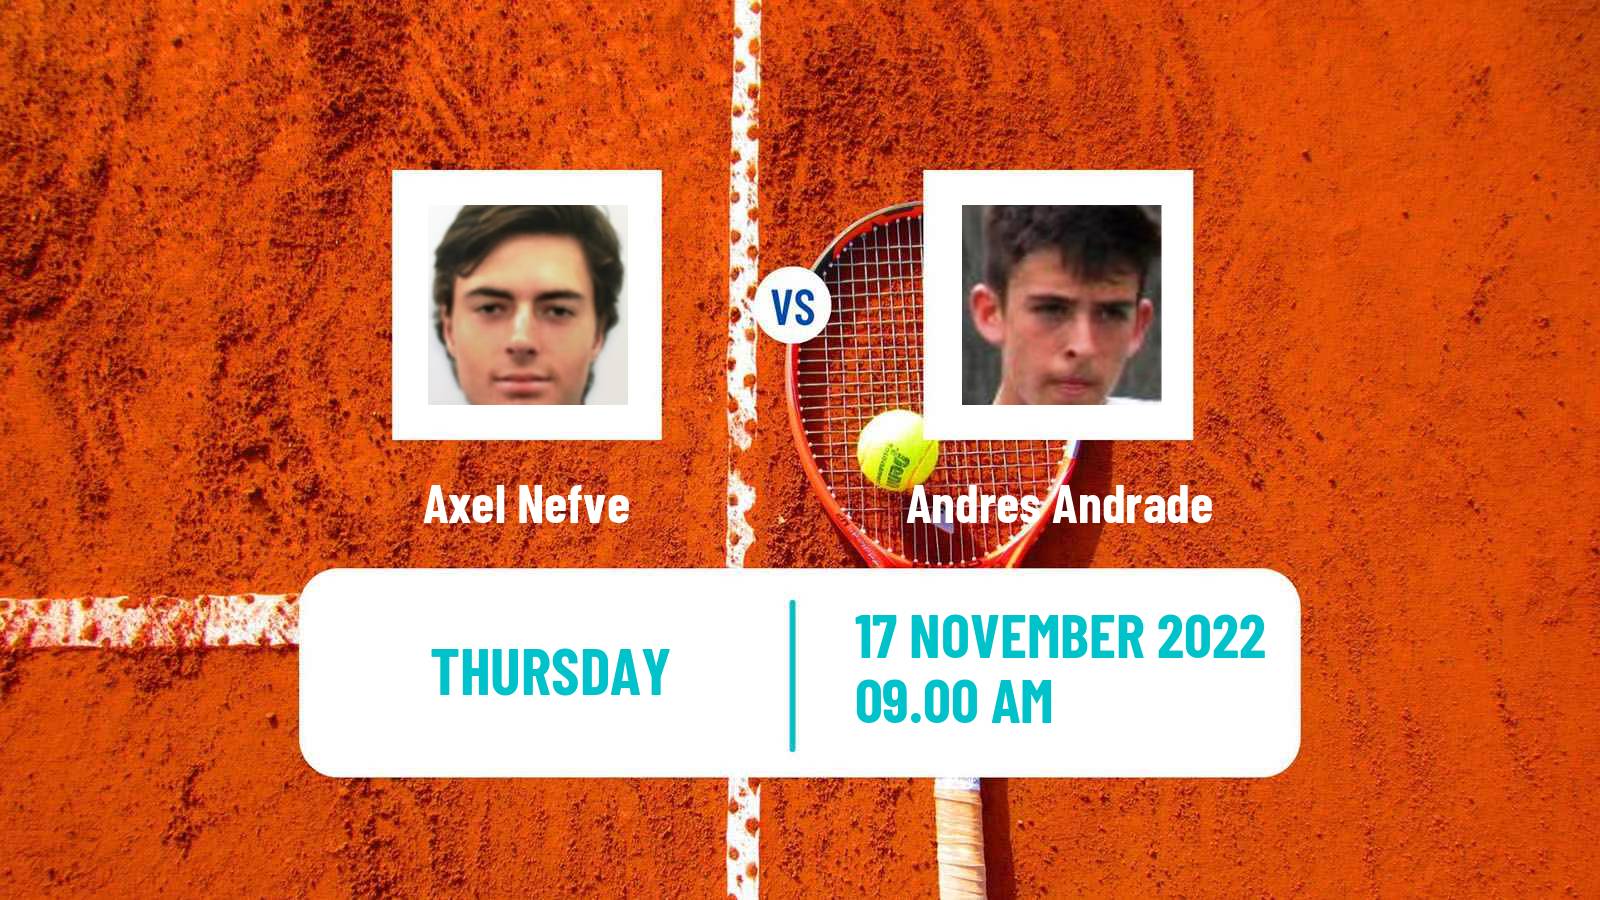 Tennis ITF Tournaments Axel Nefve - Andres Andrade